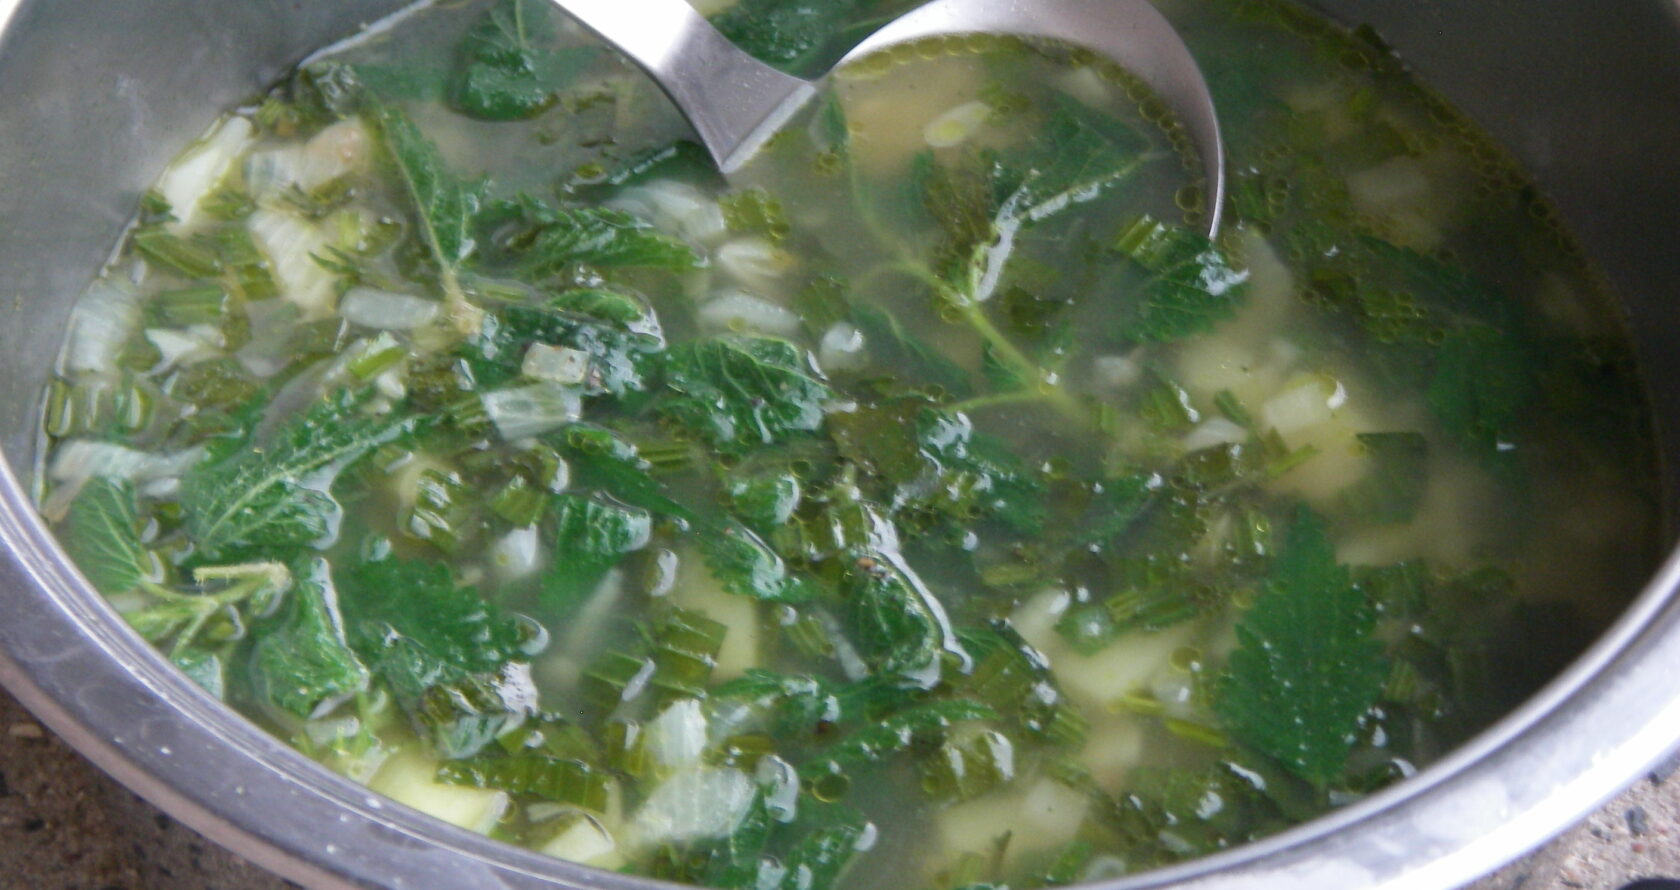 Mit Wildpflanzen lassen sich leckere und nahrhafte Gerichte Zaubern. Hier sind zwei einfache Rezepte für Suppen aus Spitzwegerich- und Brennnesselblättern!